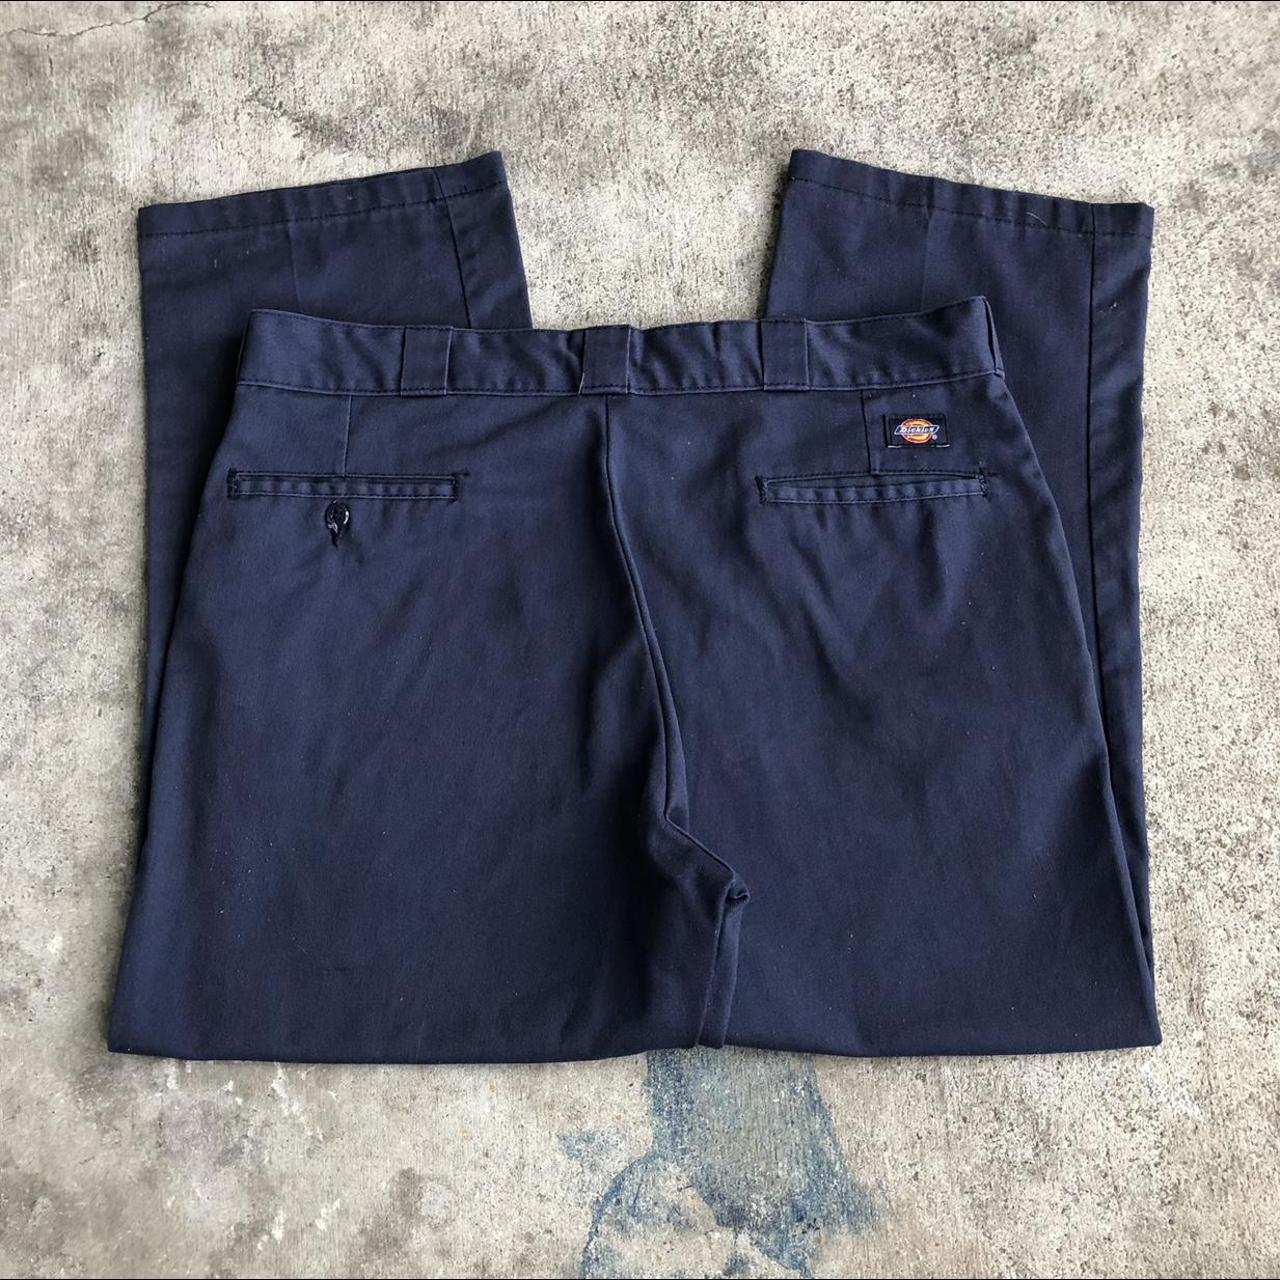 Vintage navy blue dickies pants size 36 X 28 🌀... - Depop